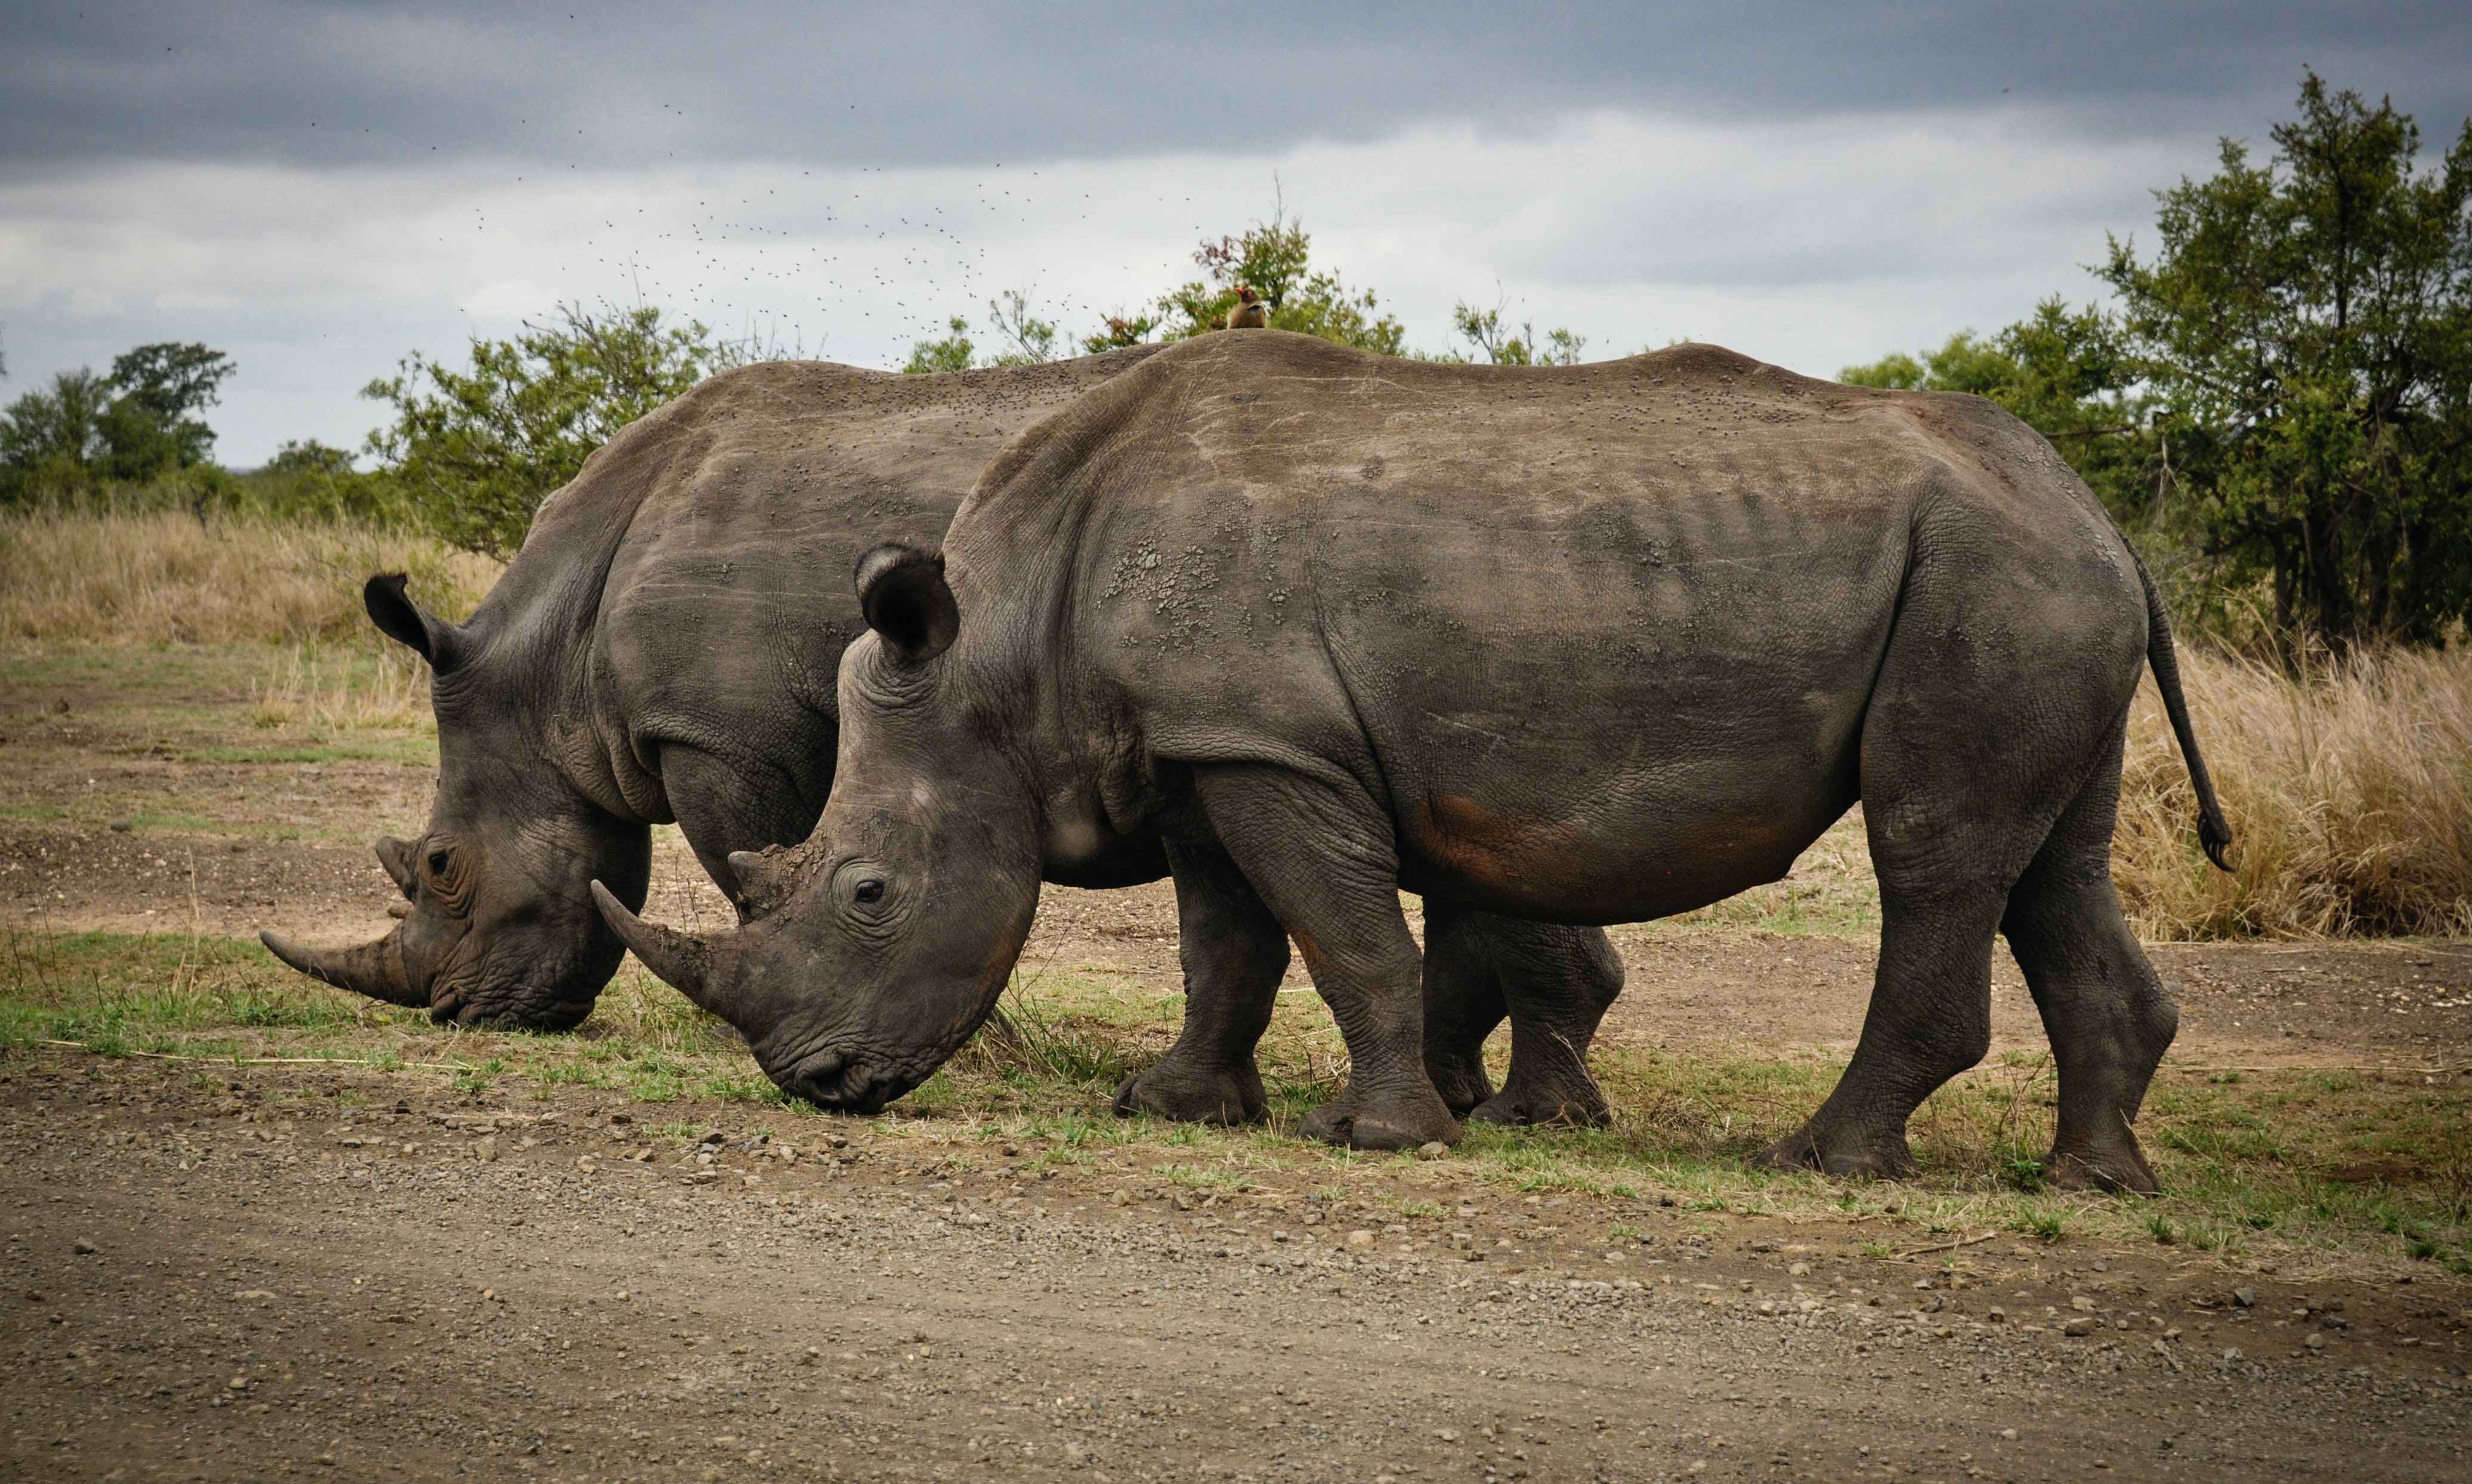 Rhinocerous in the Ngorongoro Crater in Tanzania